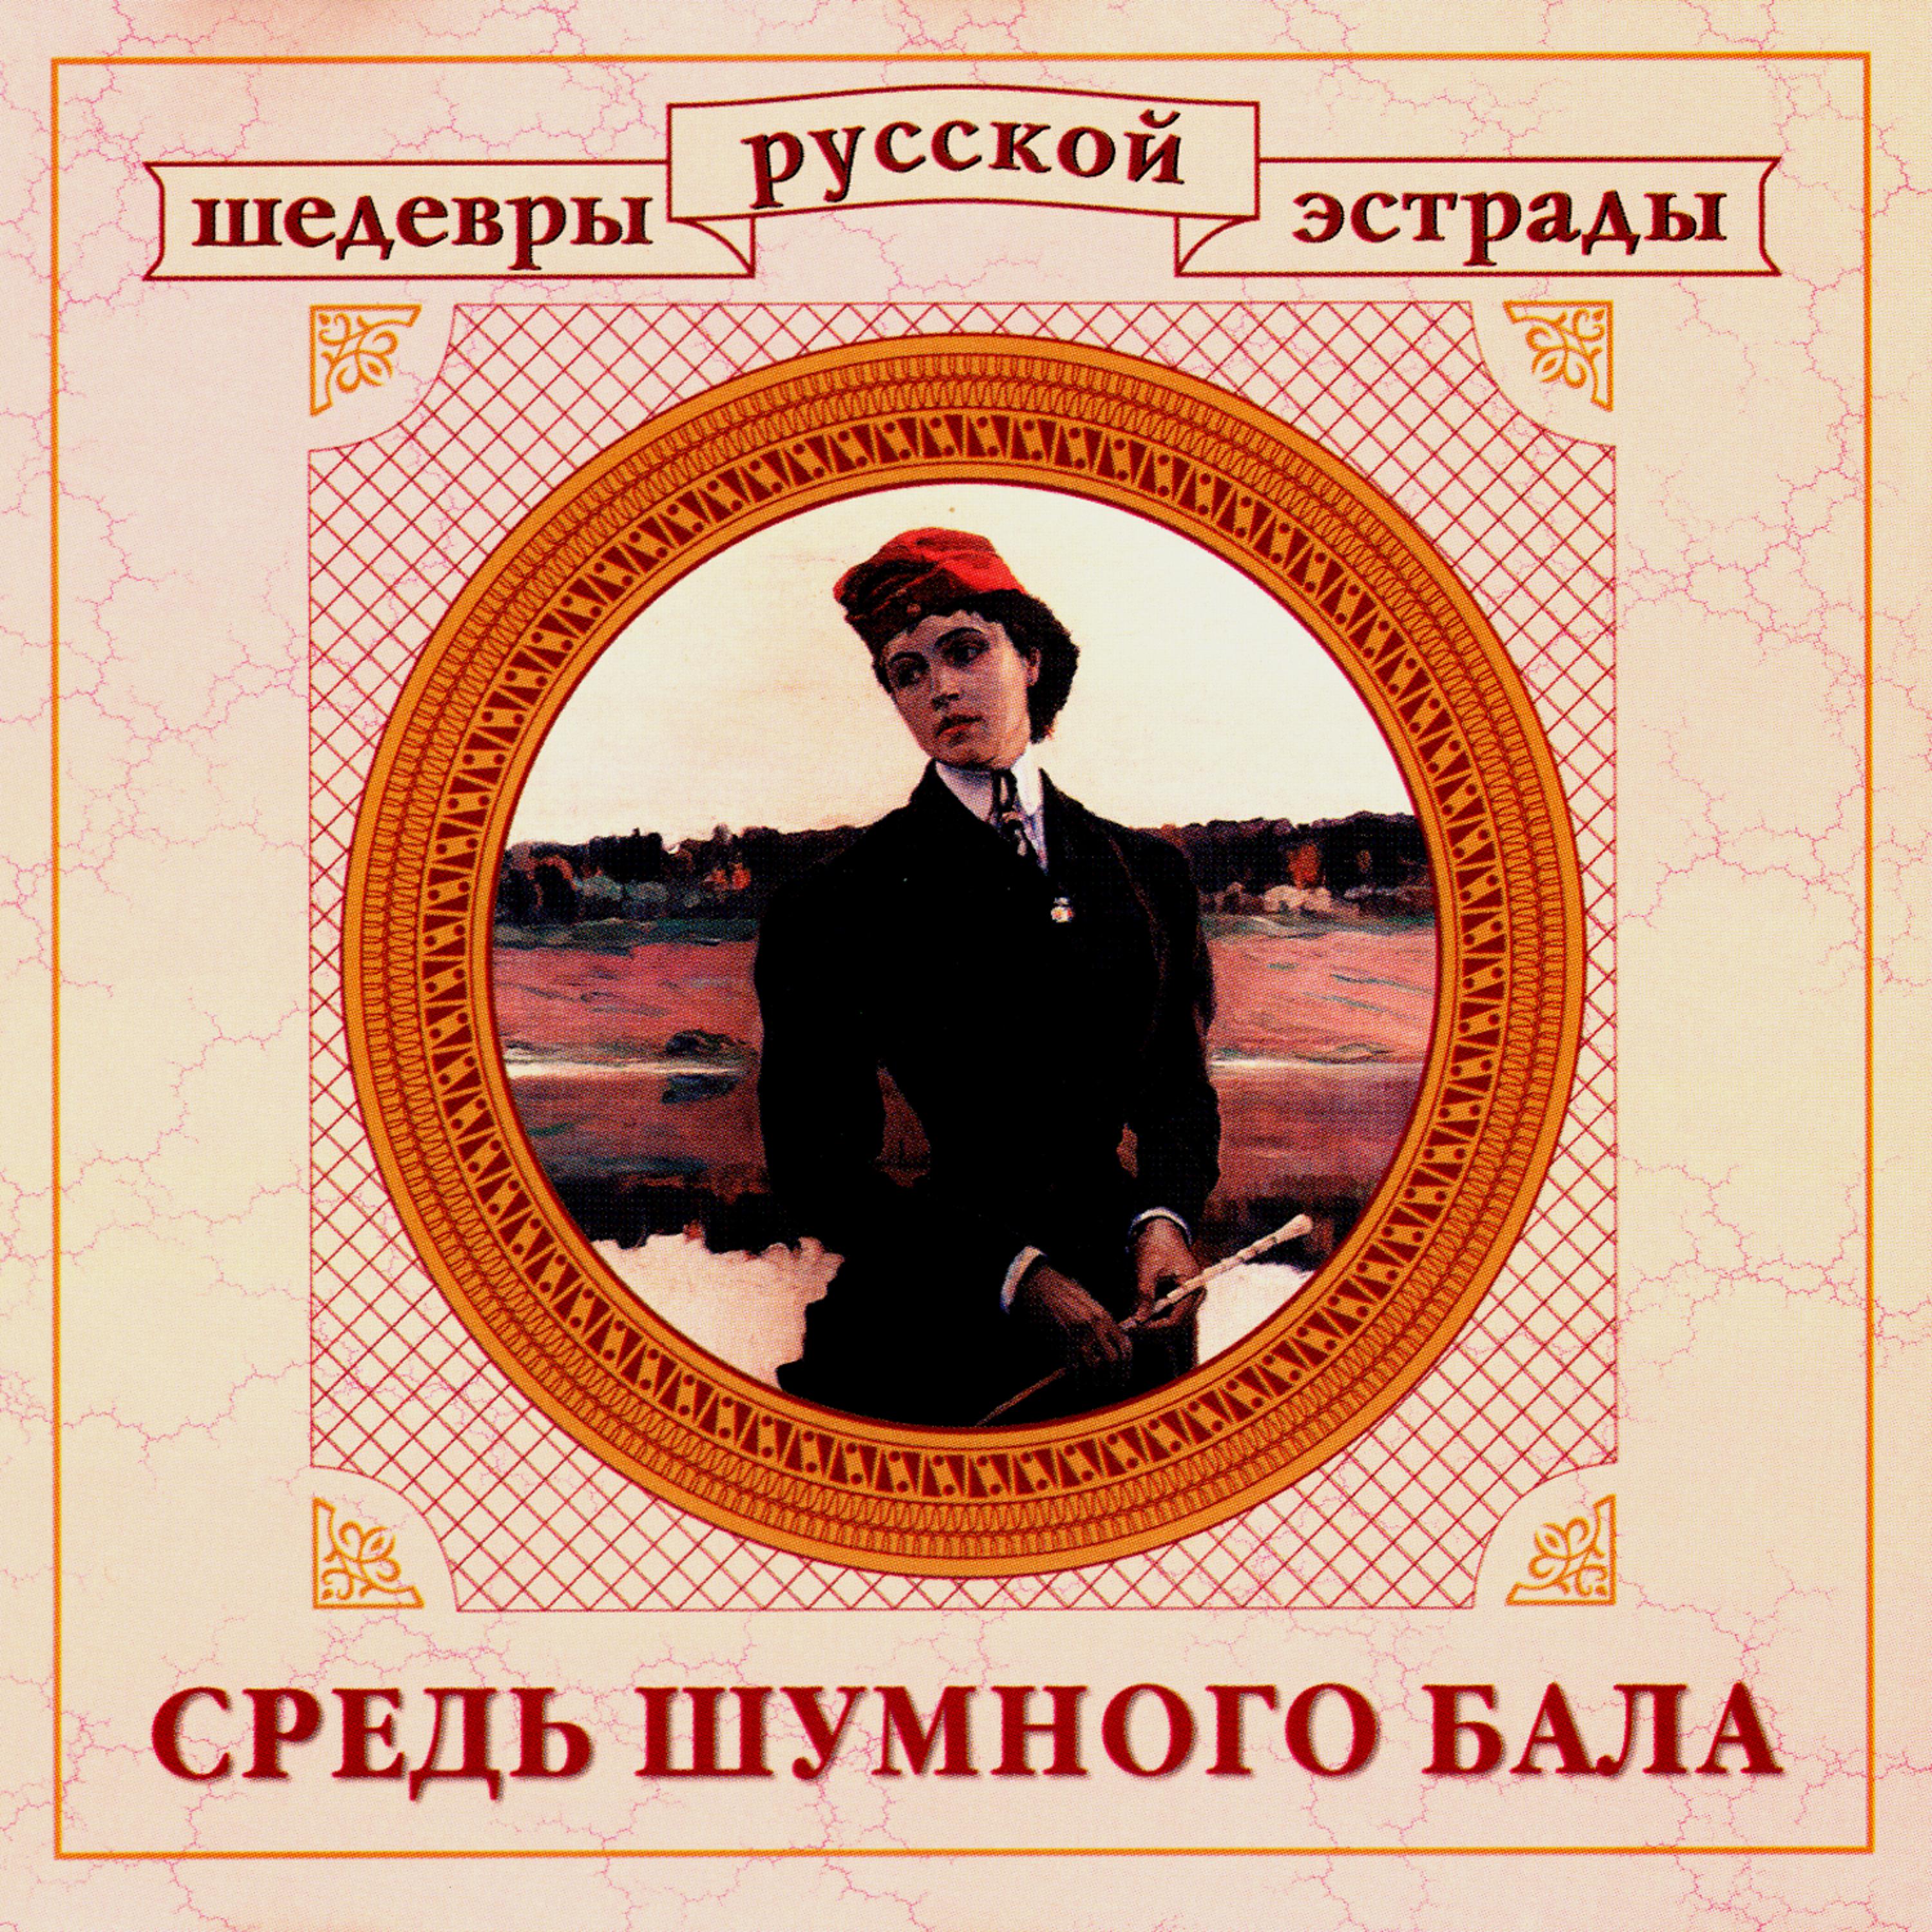 Постер альбома Шедевры русской эстрады. Средь шумного бала